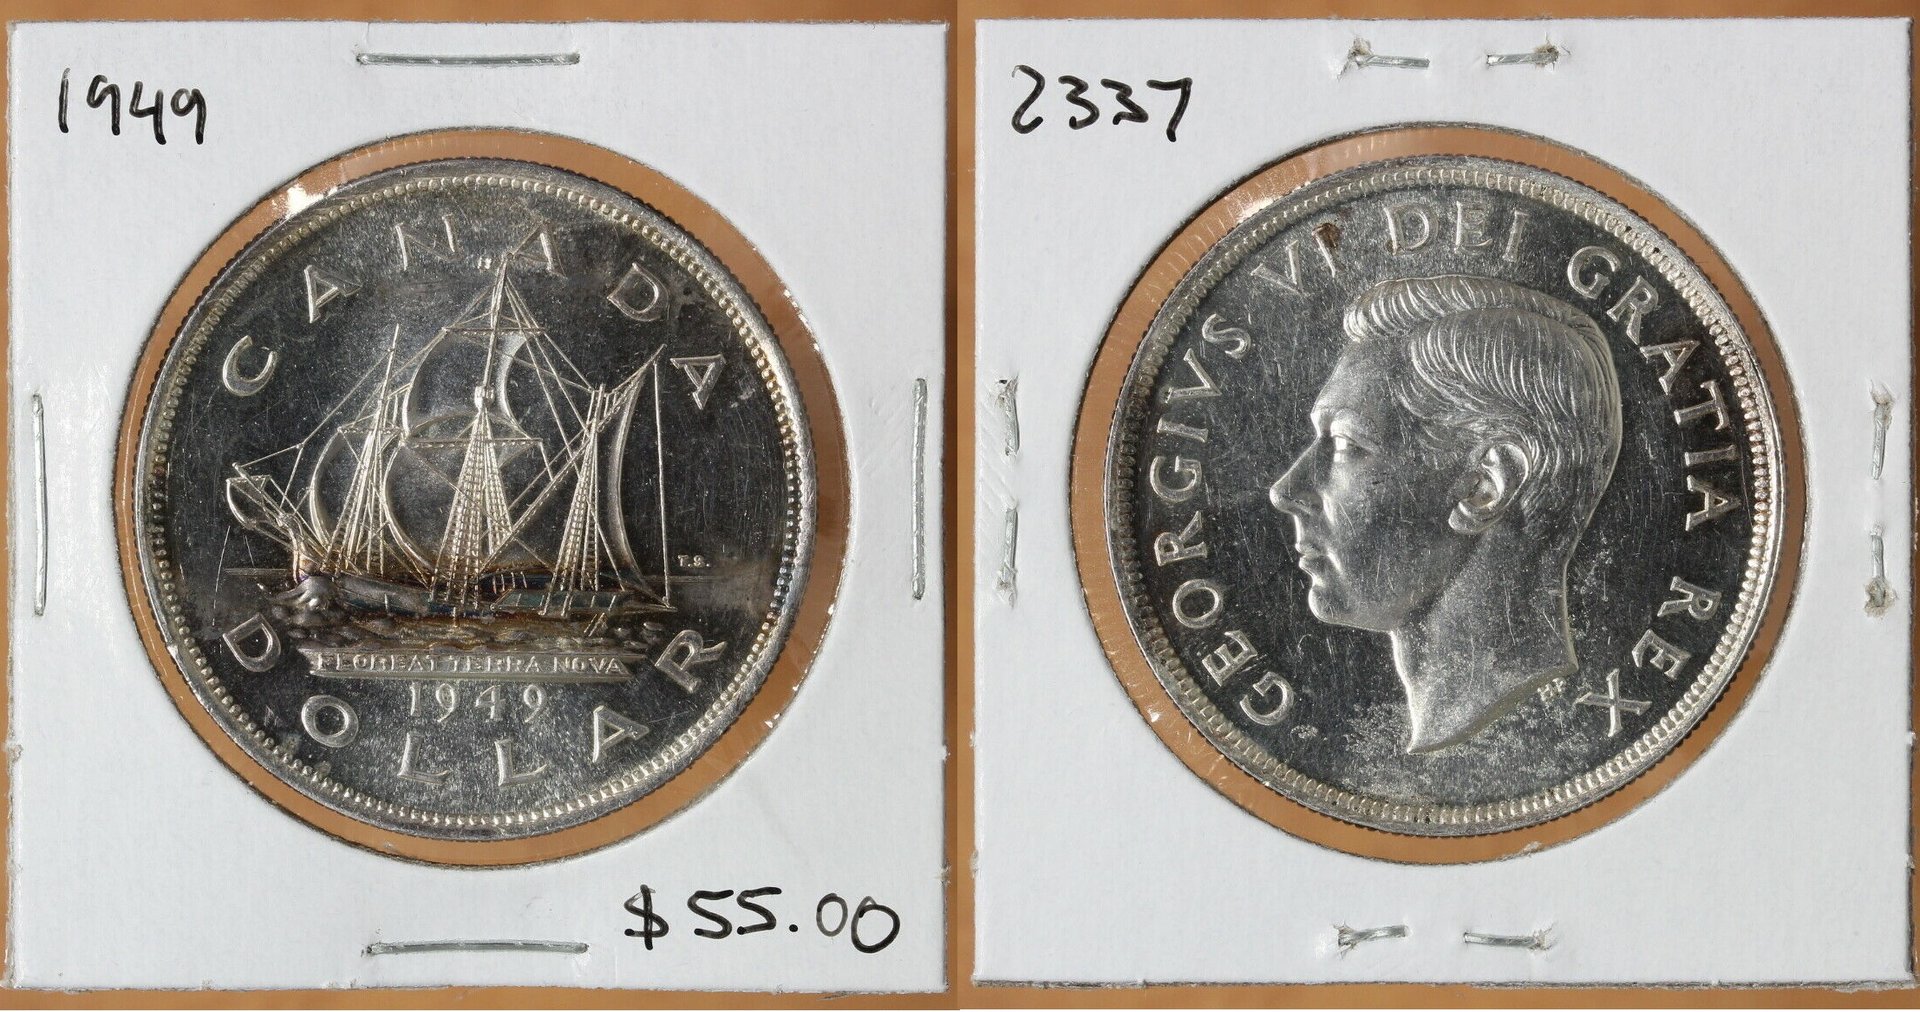 1949 Canada Silver Dollar   293125916207  mkcoins2012  o.jpg